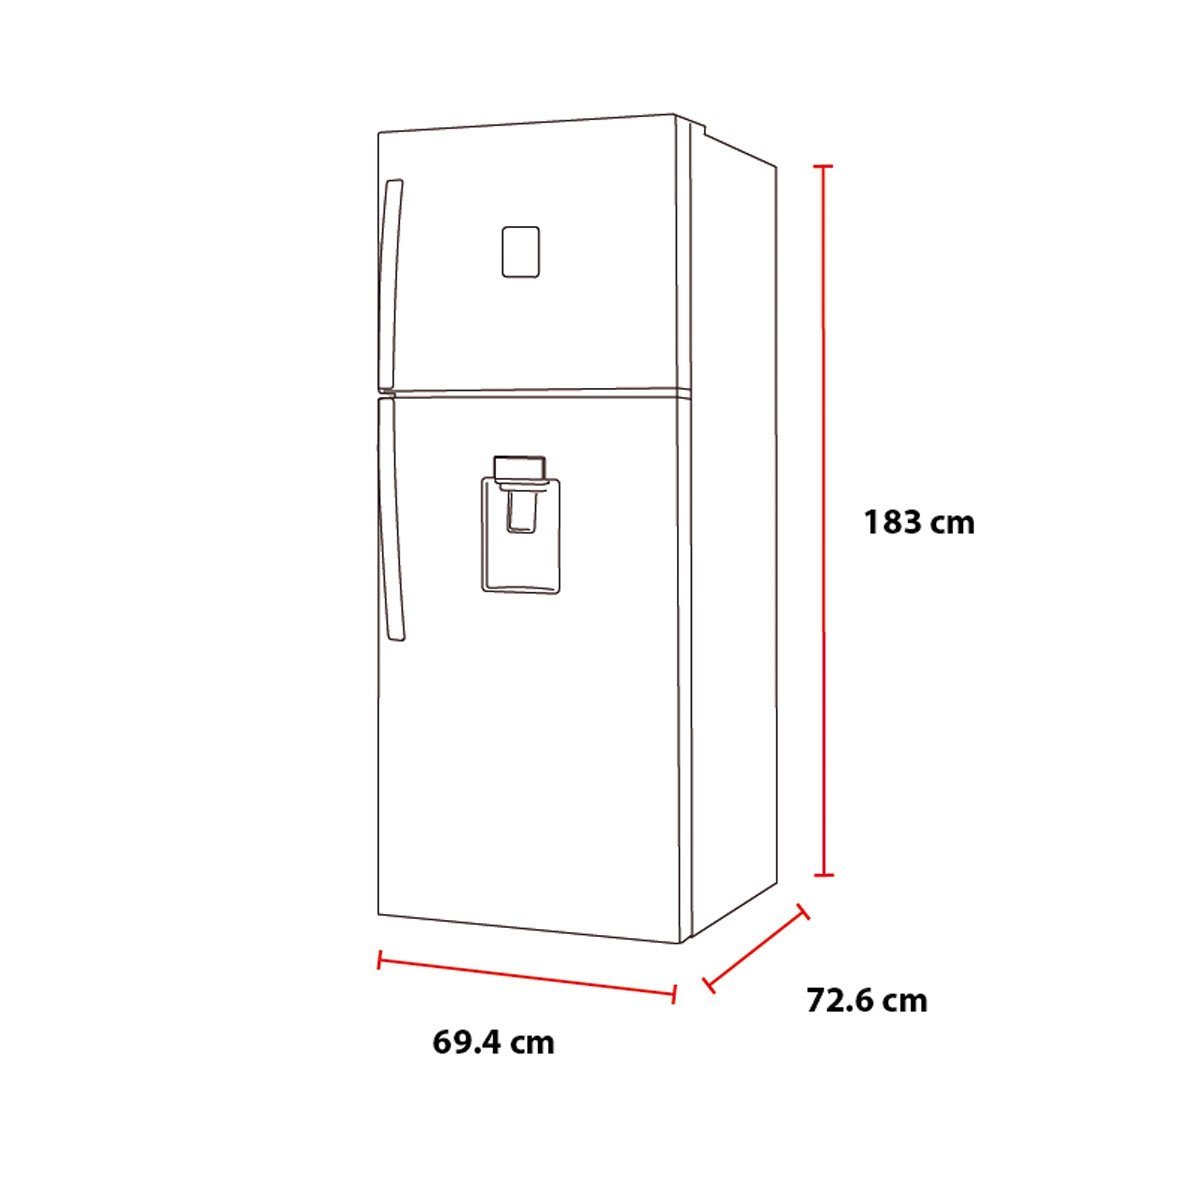 Refrigerador 2 Puertas 17 P3 Negro con Deposito de Agua Daewoo